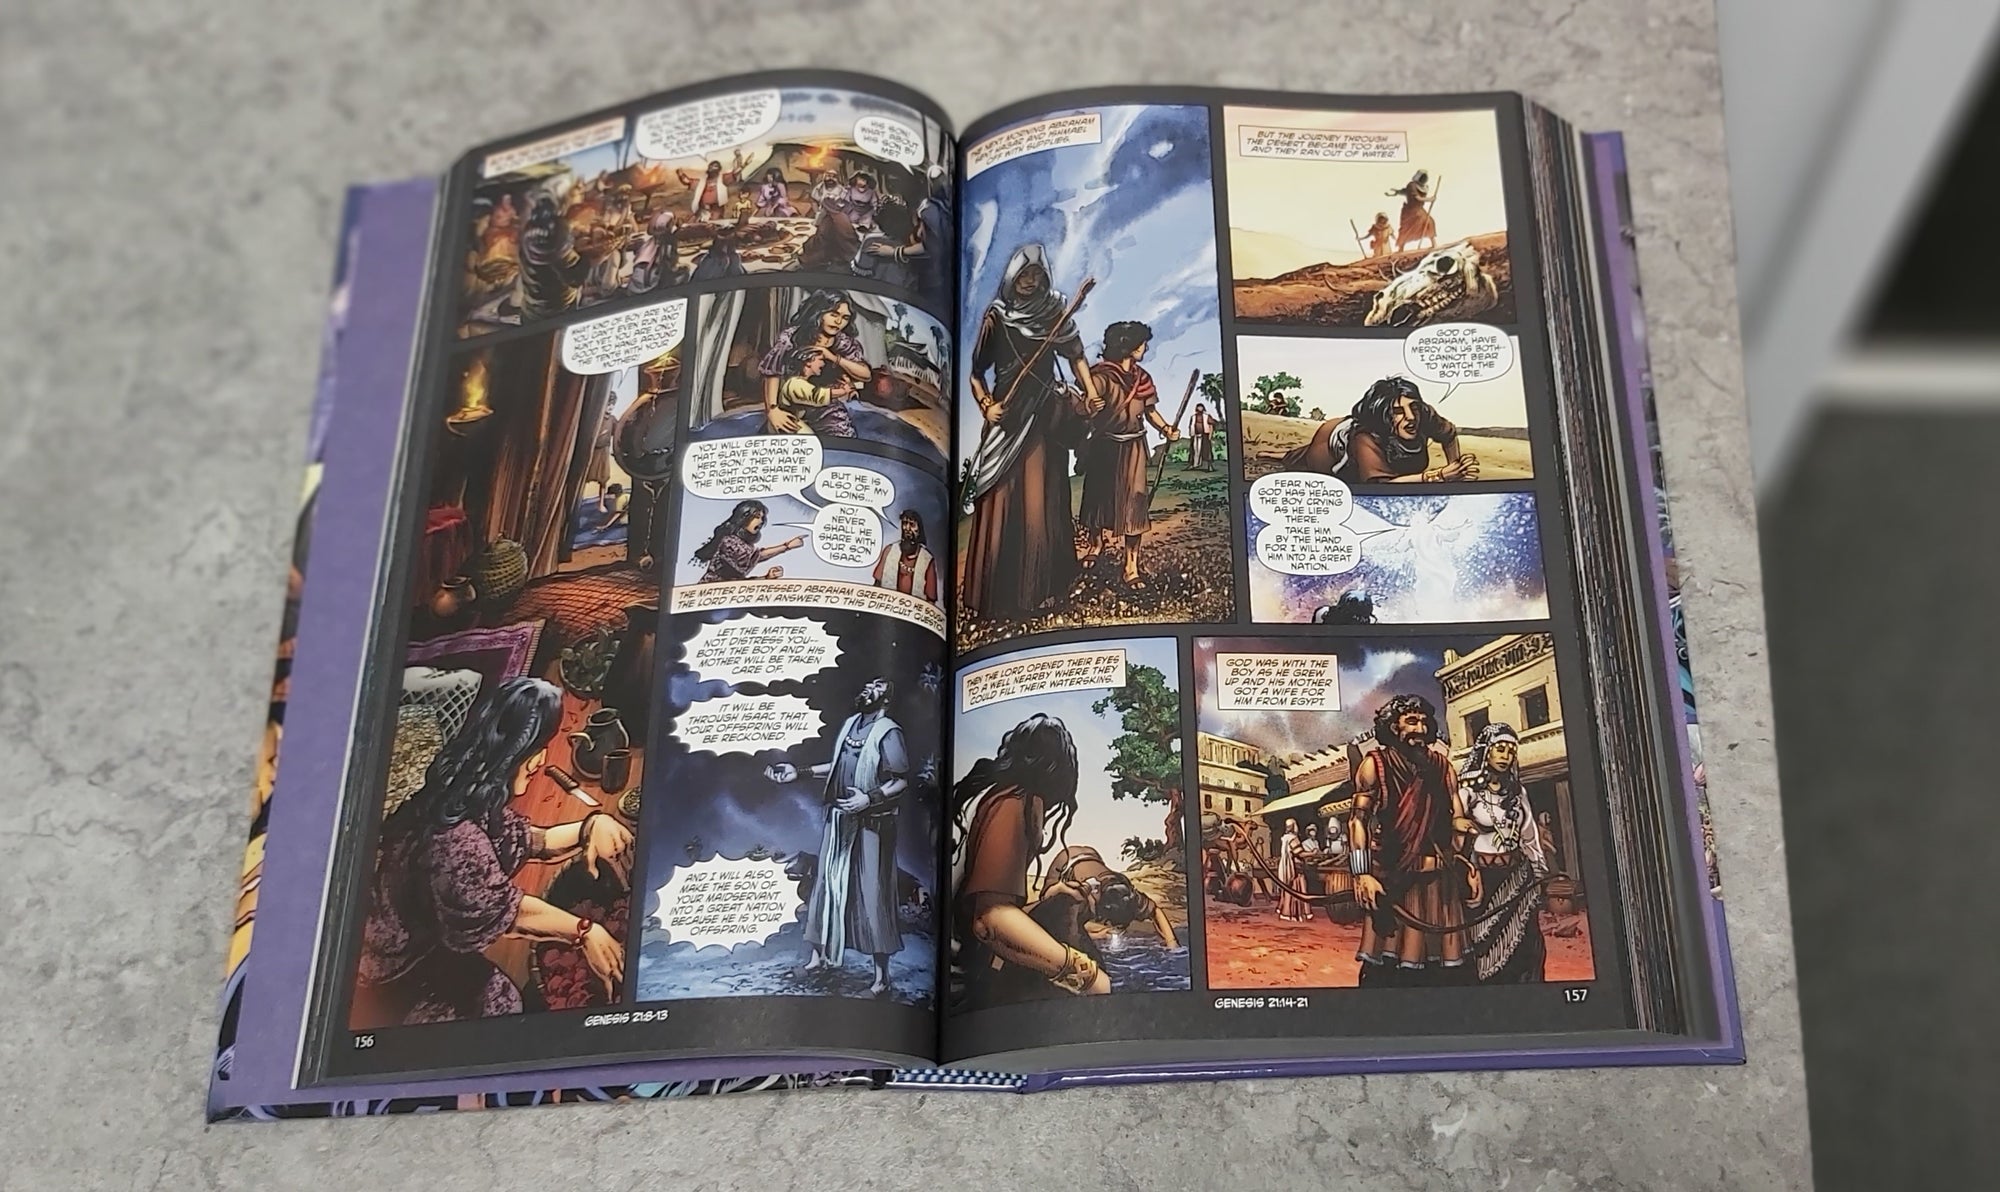 Kingstone Bible Vol. I Hardcover - Kingstone Comics